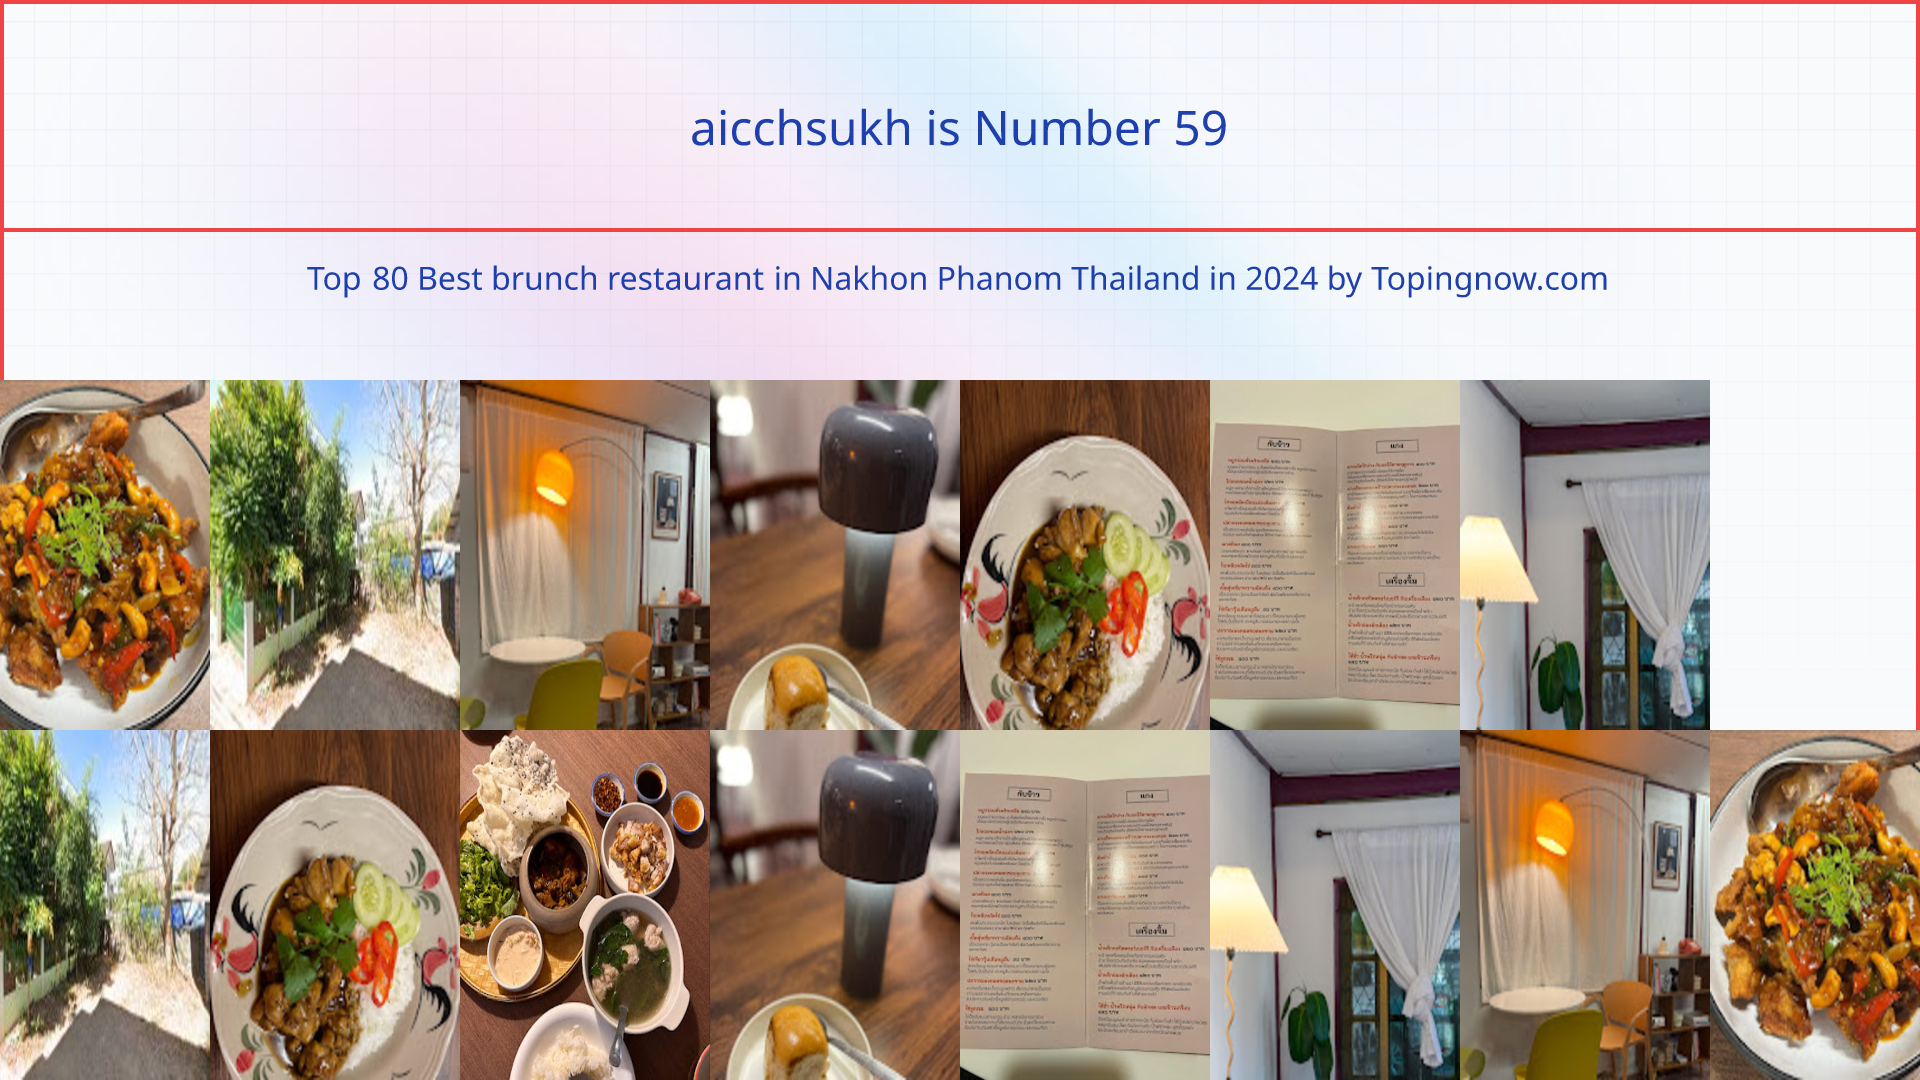 aicchsukh: Top 80 Best brunch restaurant in Nakhon Phanom Thailand in 2024